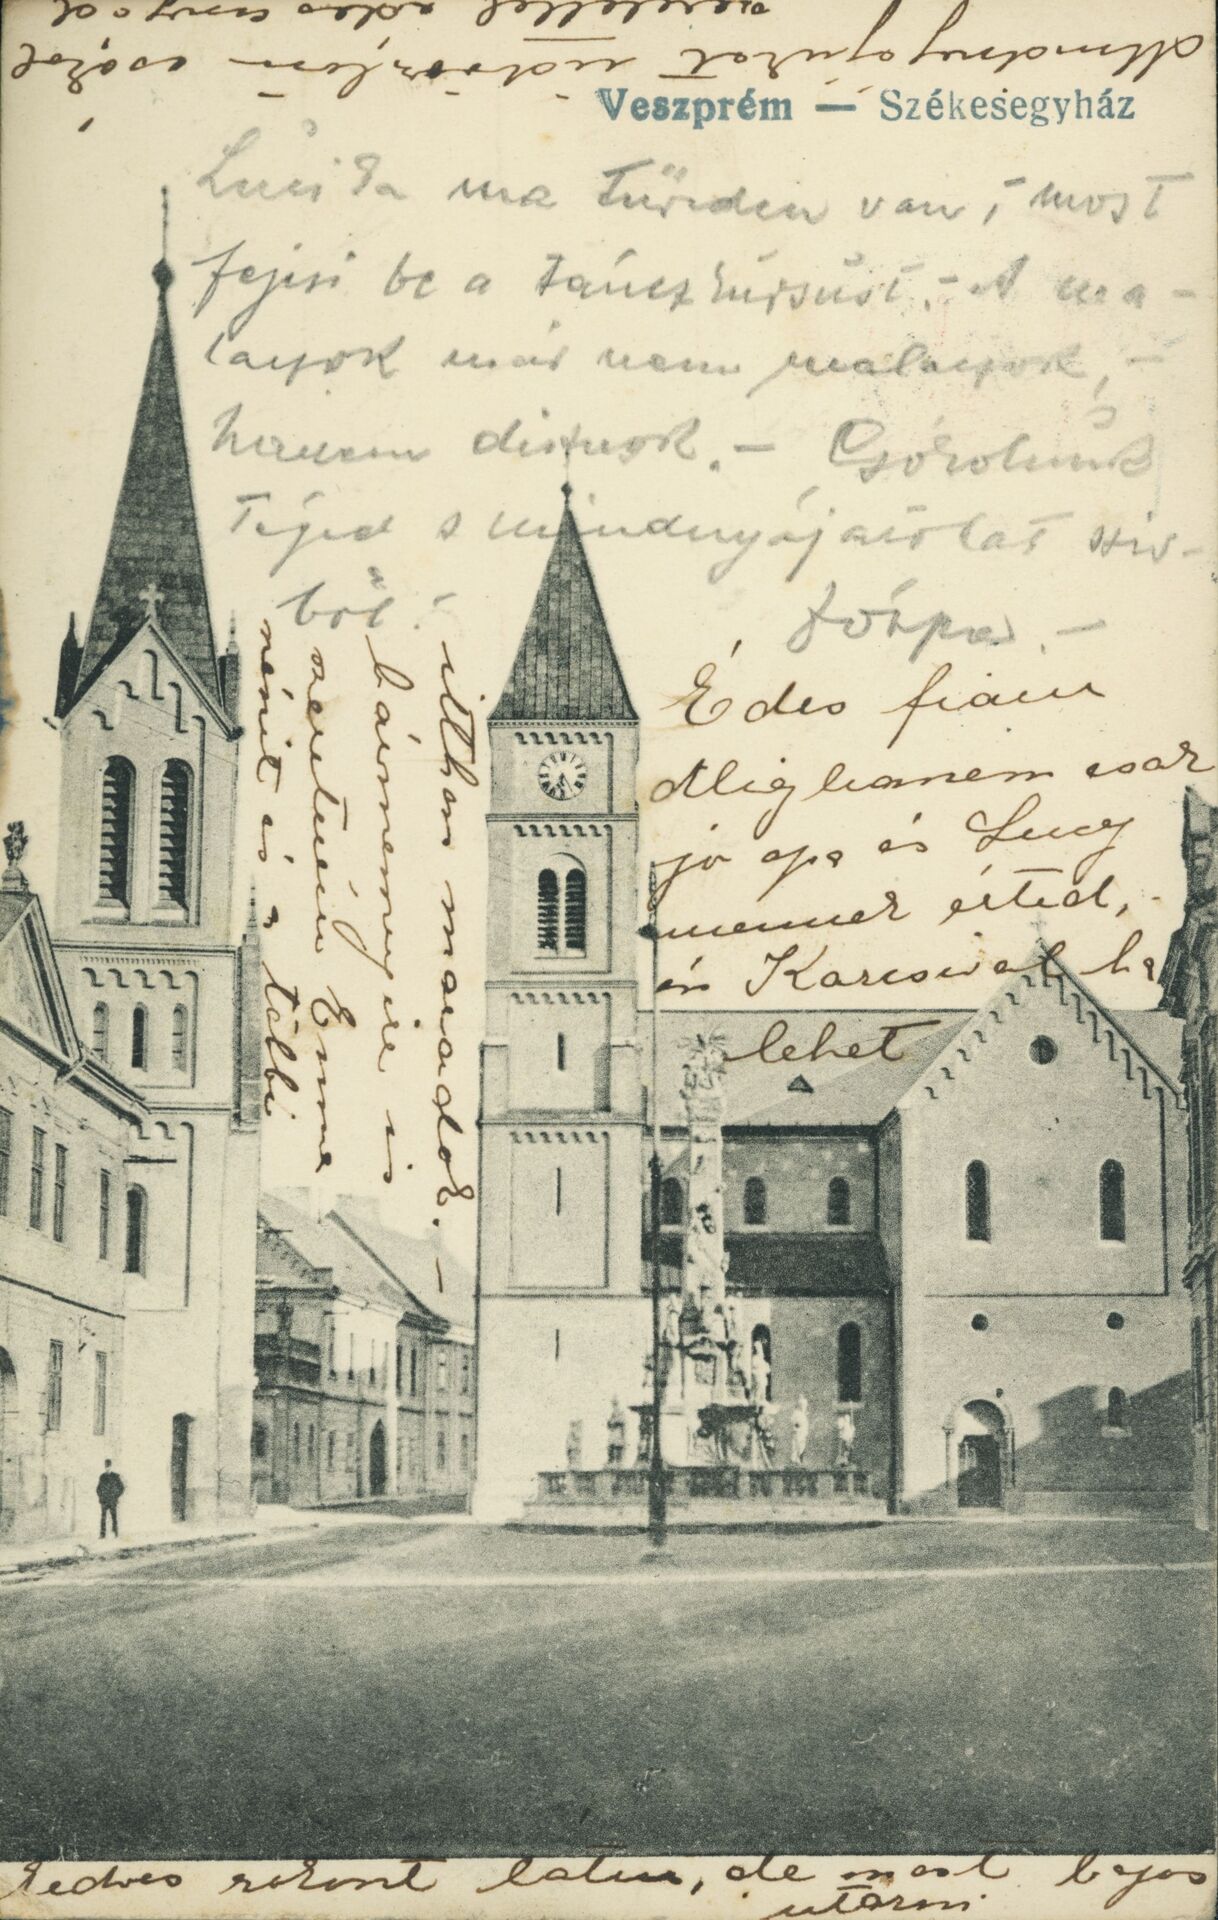 1-3 Basilika von Veszprém.jpg